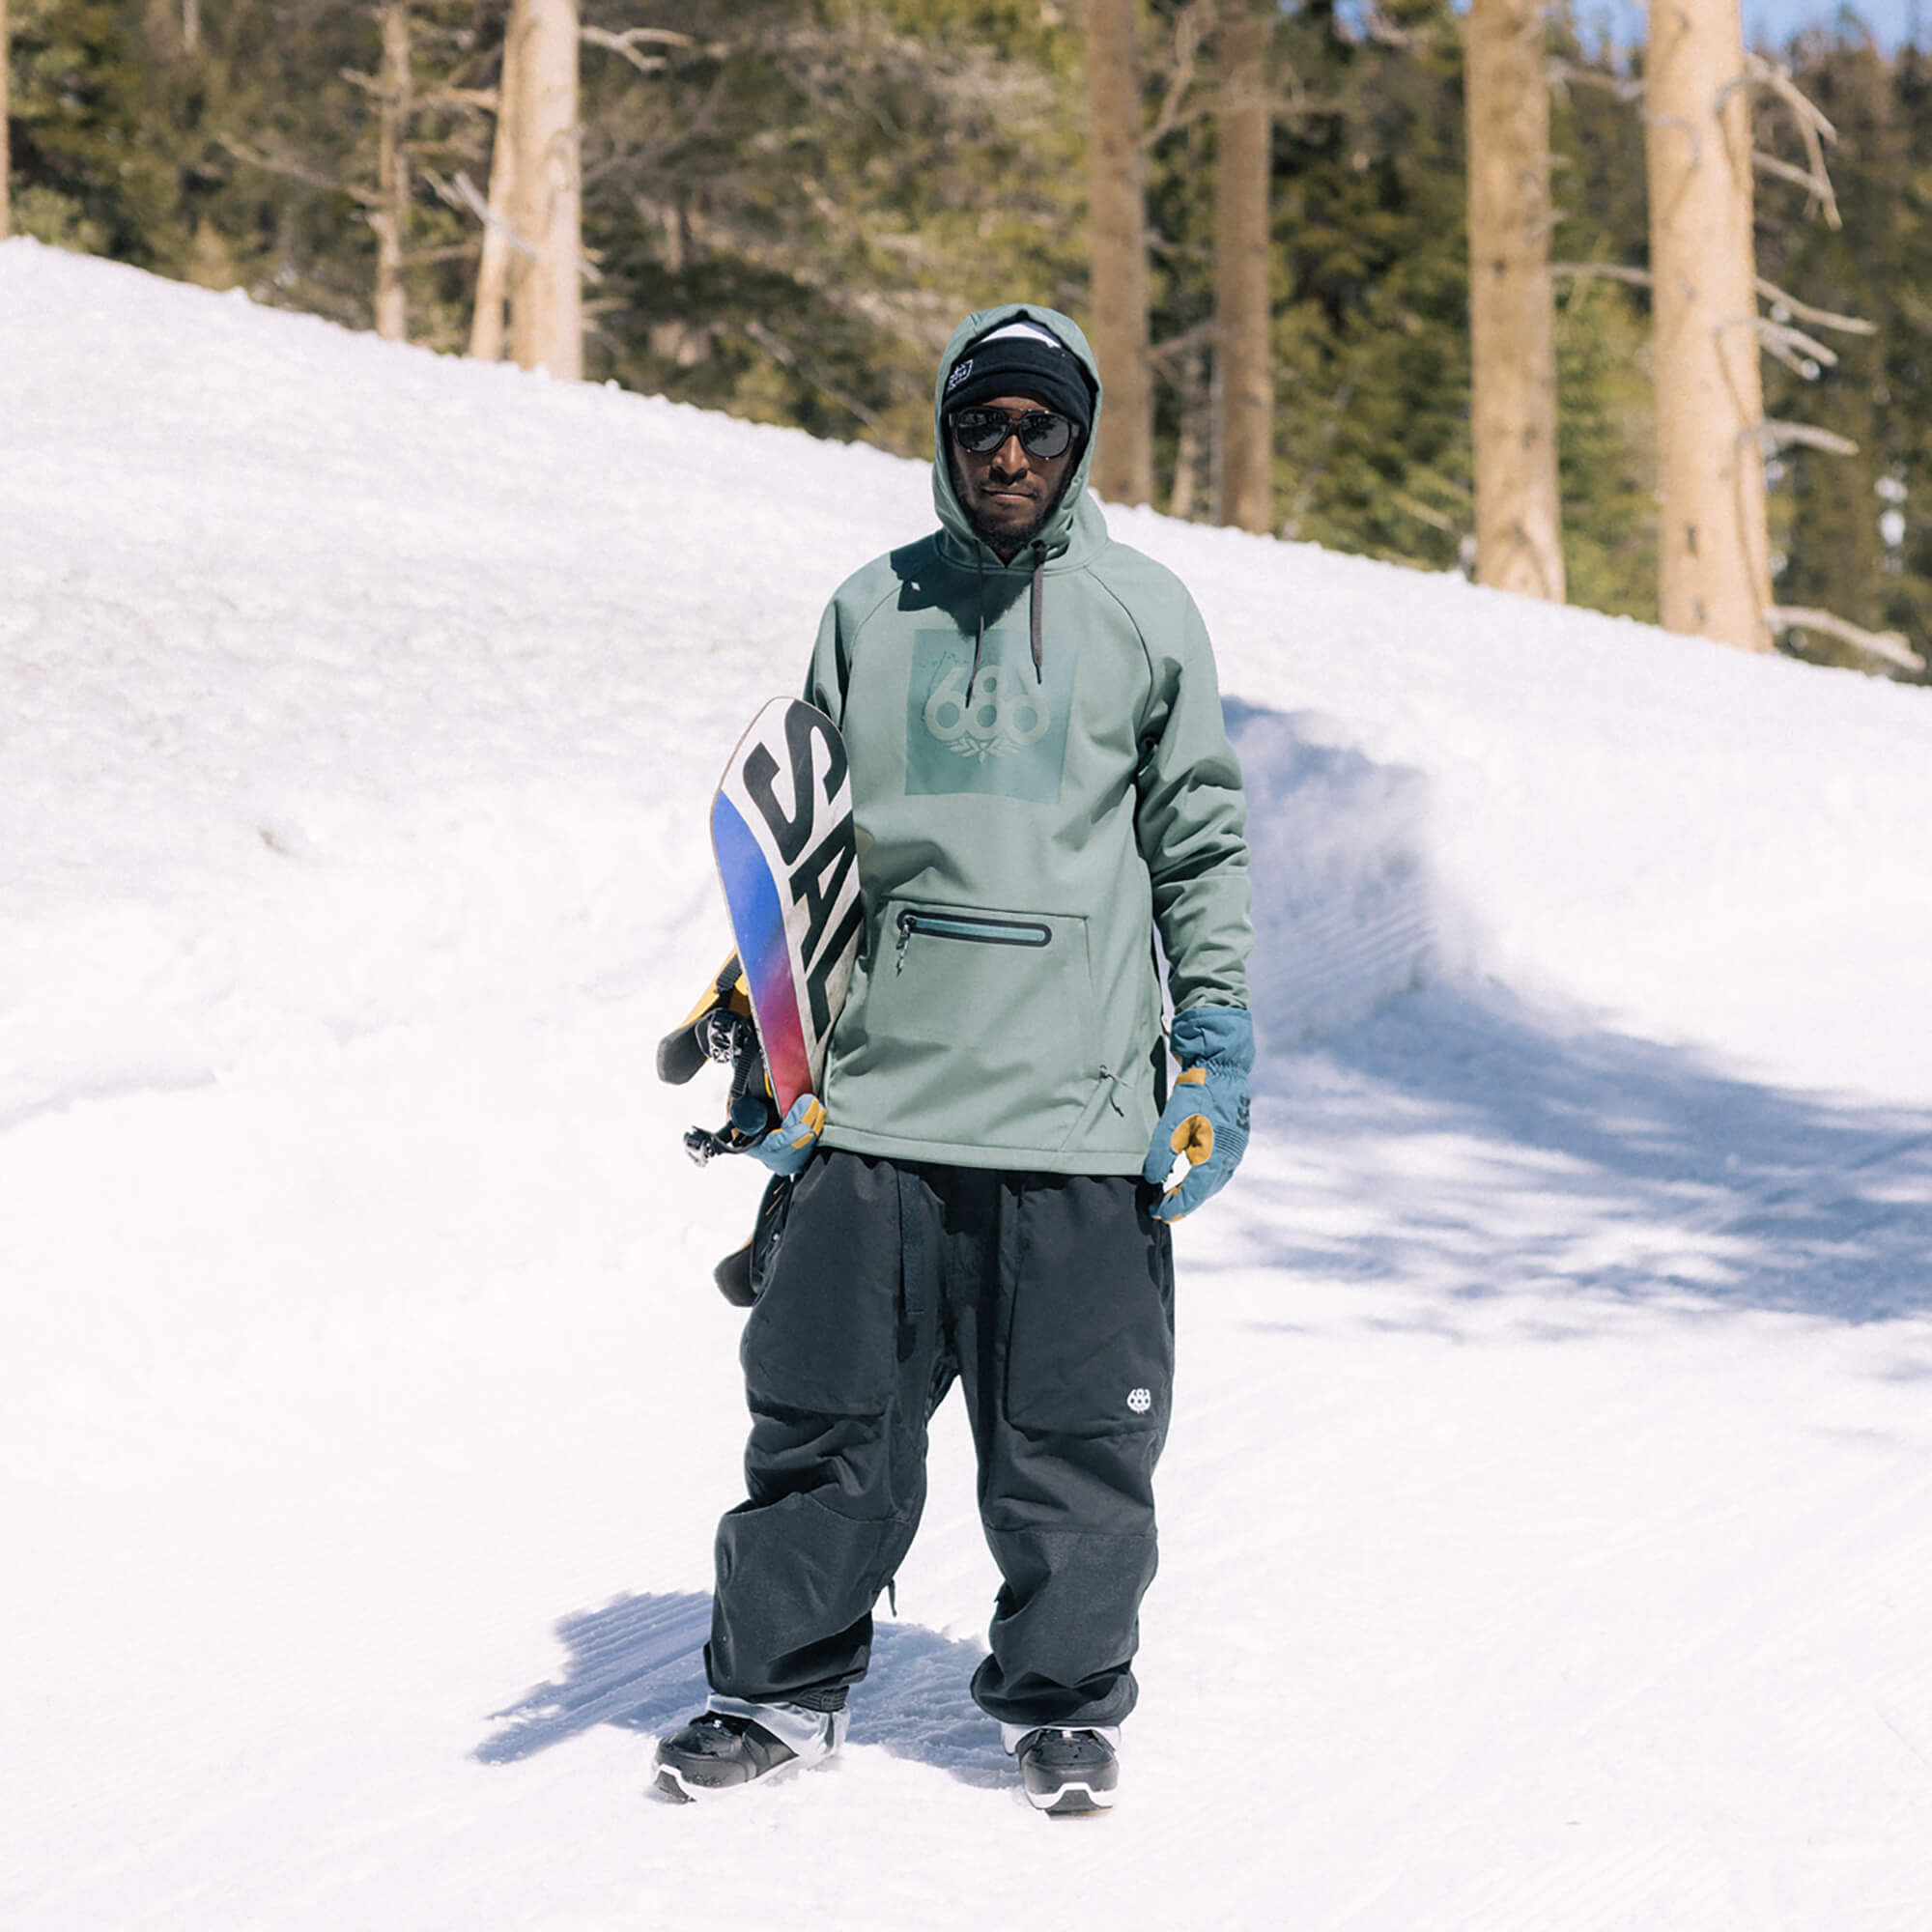 686 Waterproof Hoody Men's Snowboard/Ski Jacket